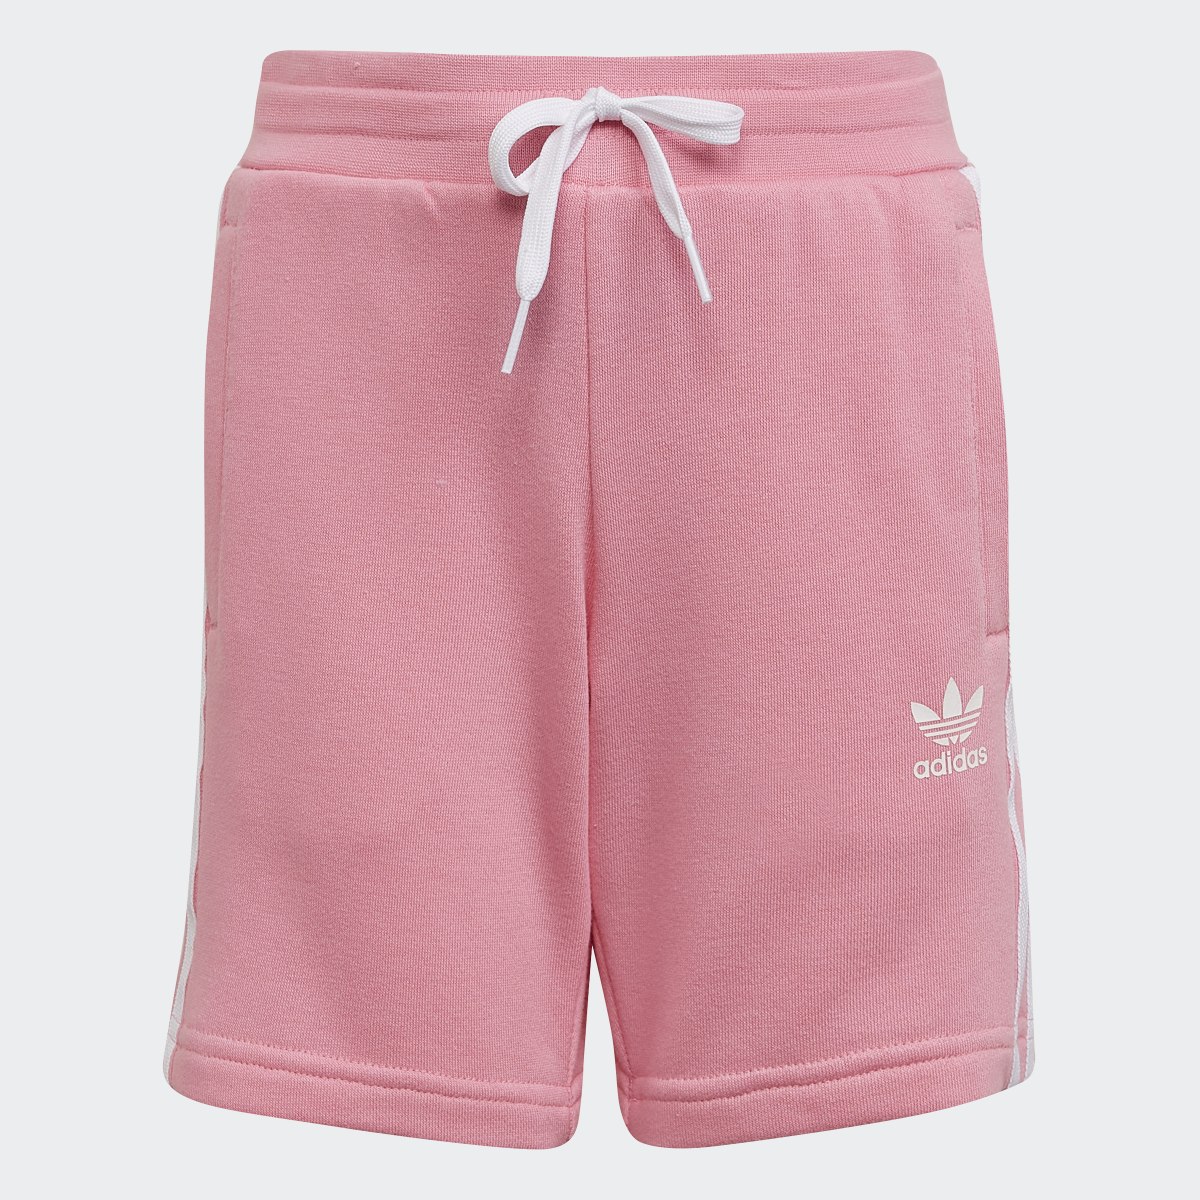 Adidas Adicolor Shorts and Tee Set. 4